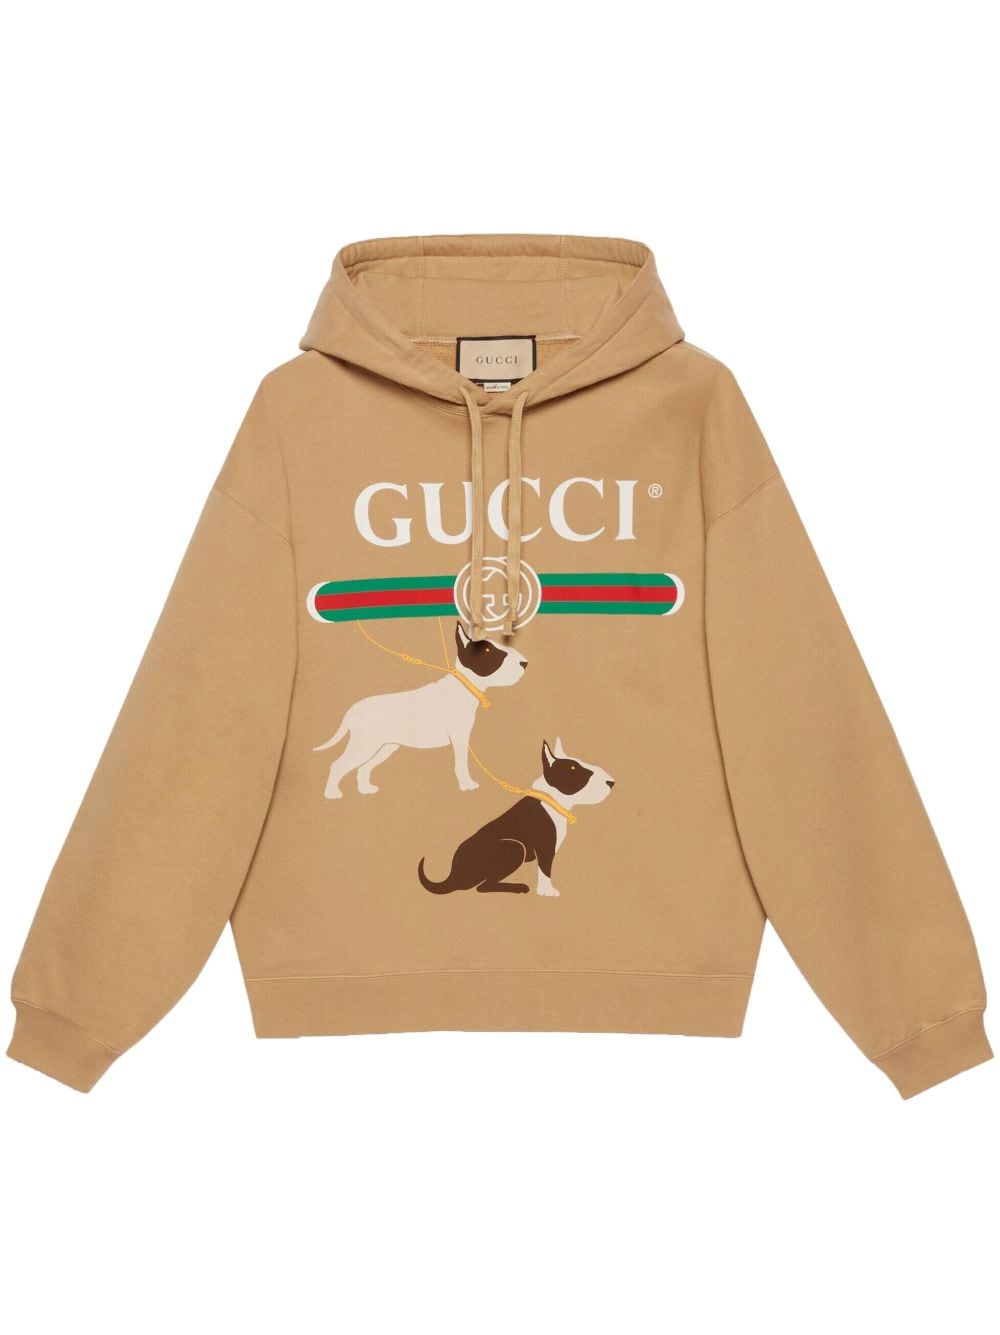 Gucci Cotton Jersey Sweatshirt In Nude & Neutrals